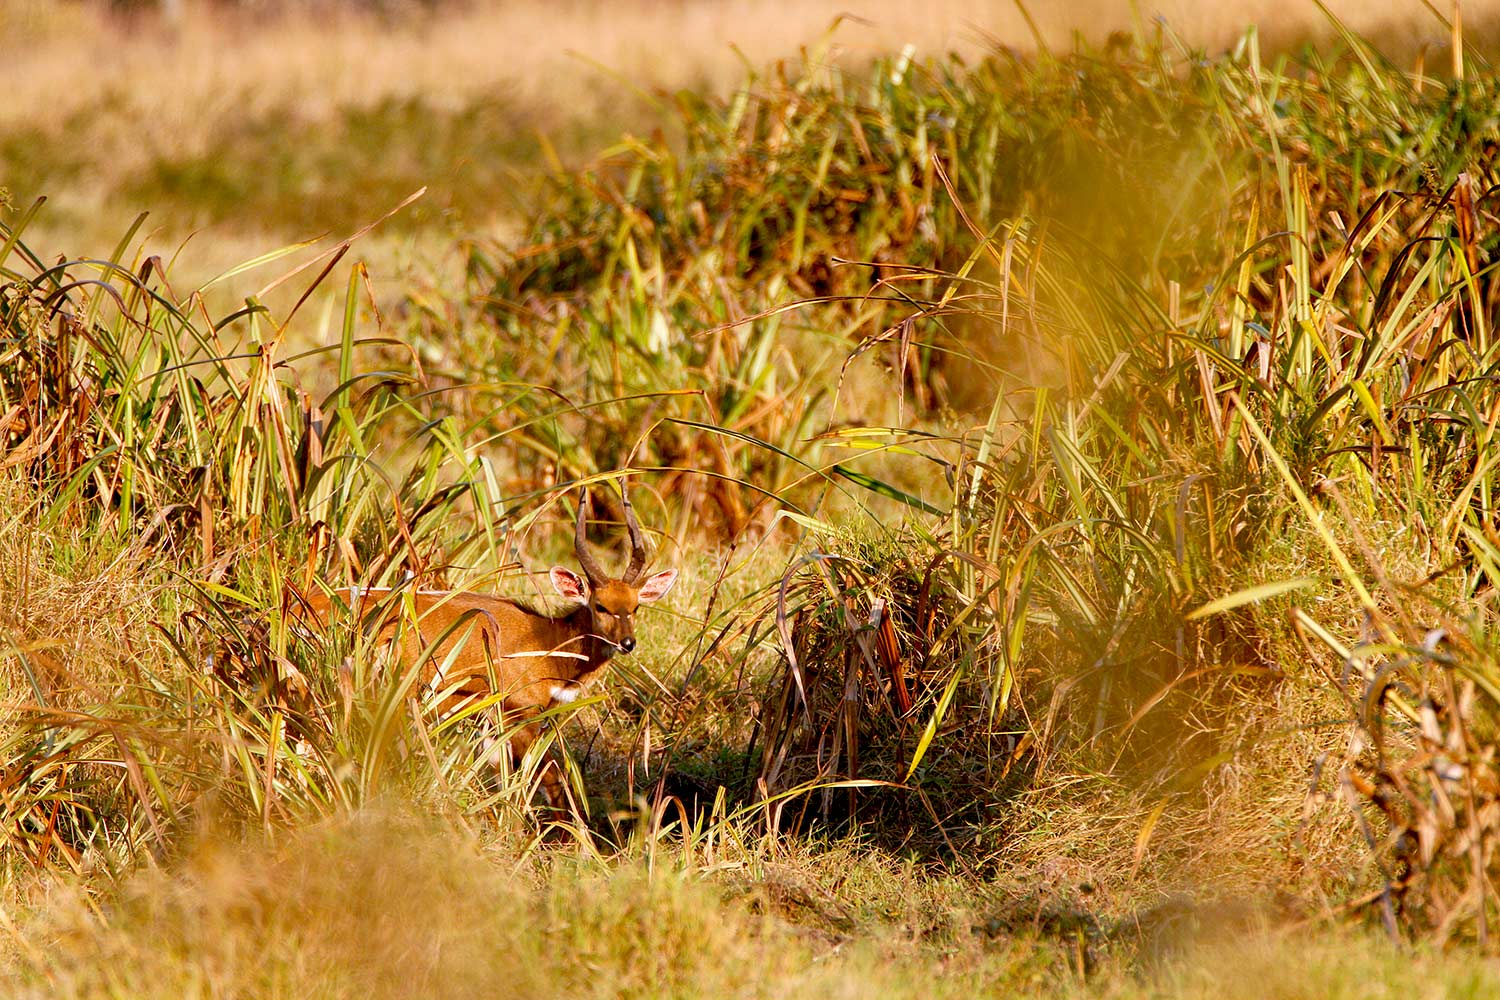 An antelope grazing through tall grass in Africa.